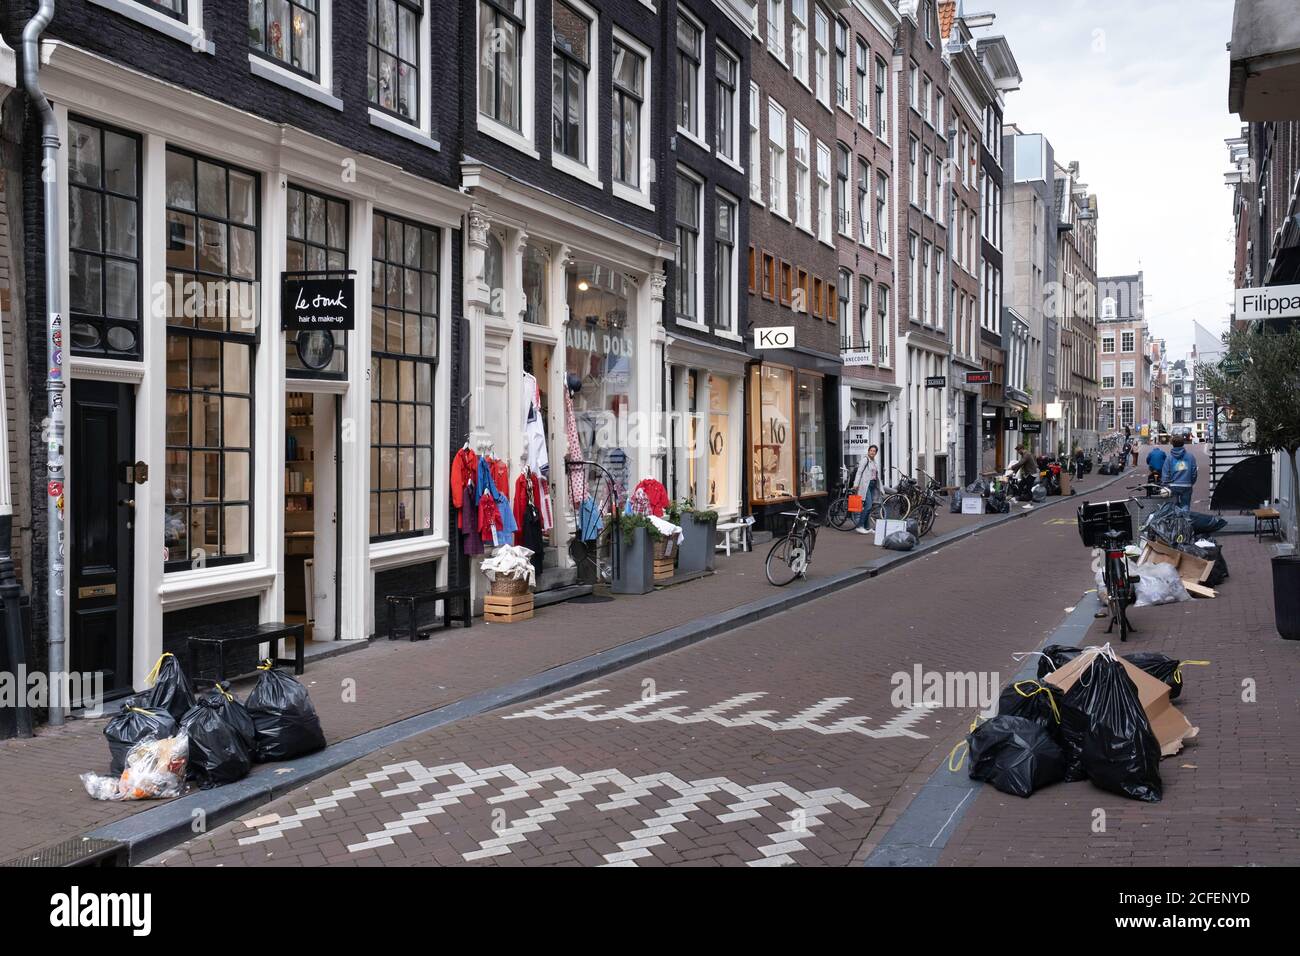 Müllsäcke liegen auf einer Straße in der Negen Straatjes (deutsch: Neun kleine Straßen), einem Viertel von Amsterdam, Niederlande Stockfoto